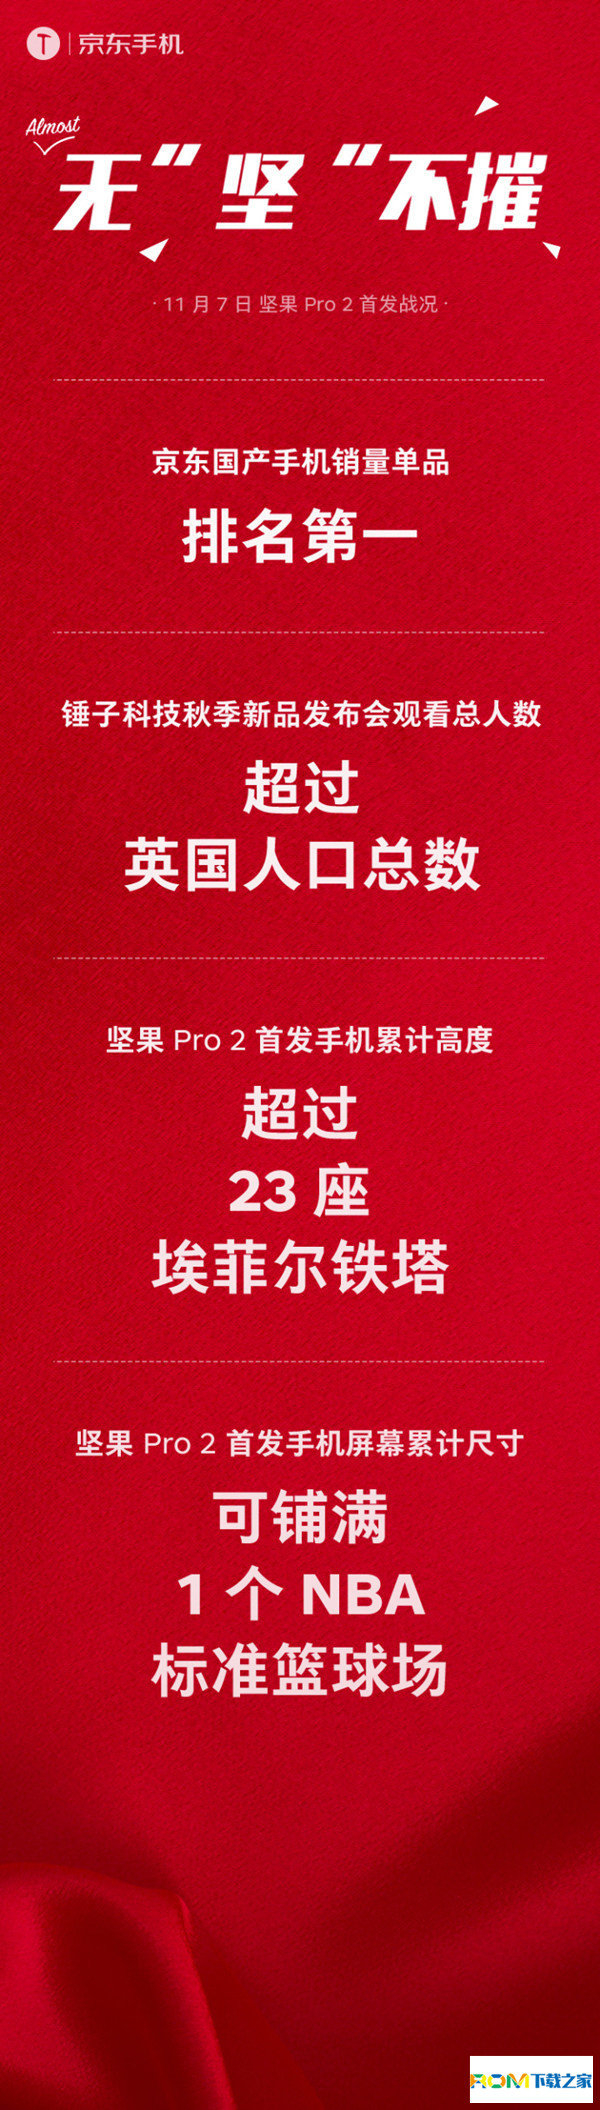 坚果Pro 2,坚果Pro 2配置,坚果Pro 2售价